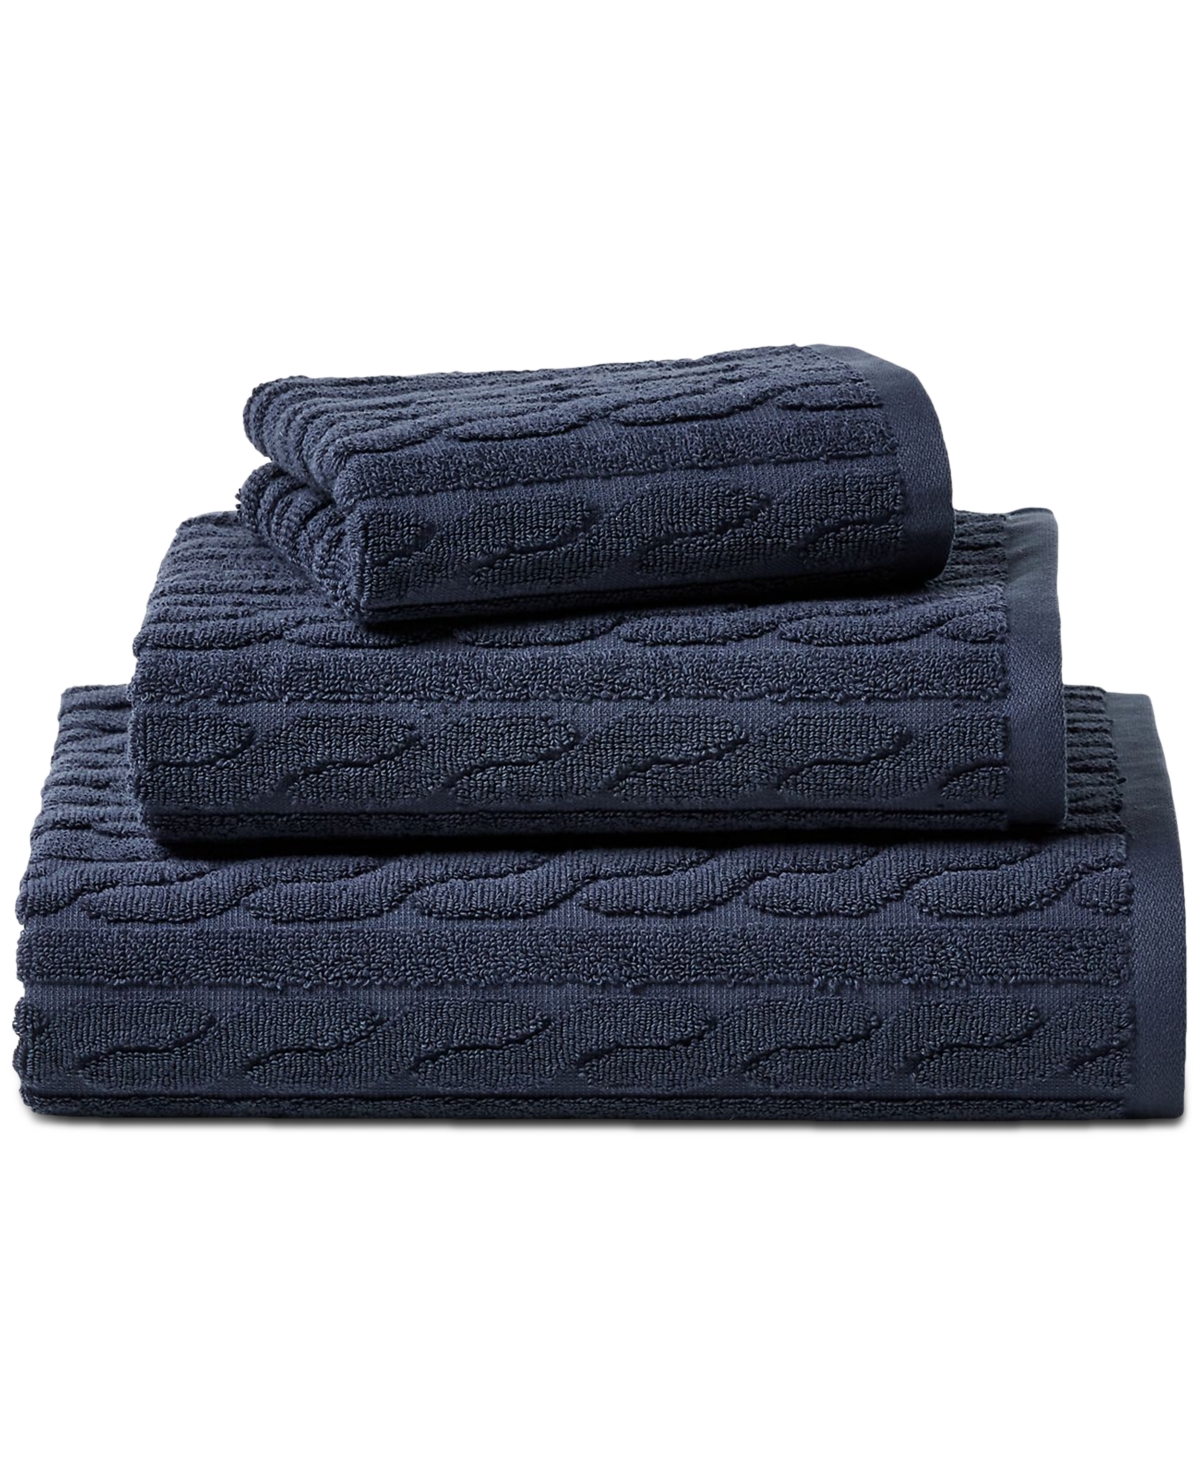 Lauren Ralph Lauren Sanders Cable Wash Towel Bedding In Club Navy